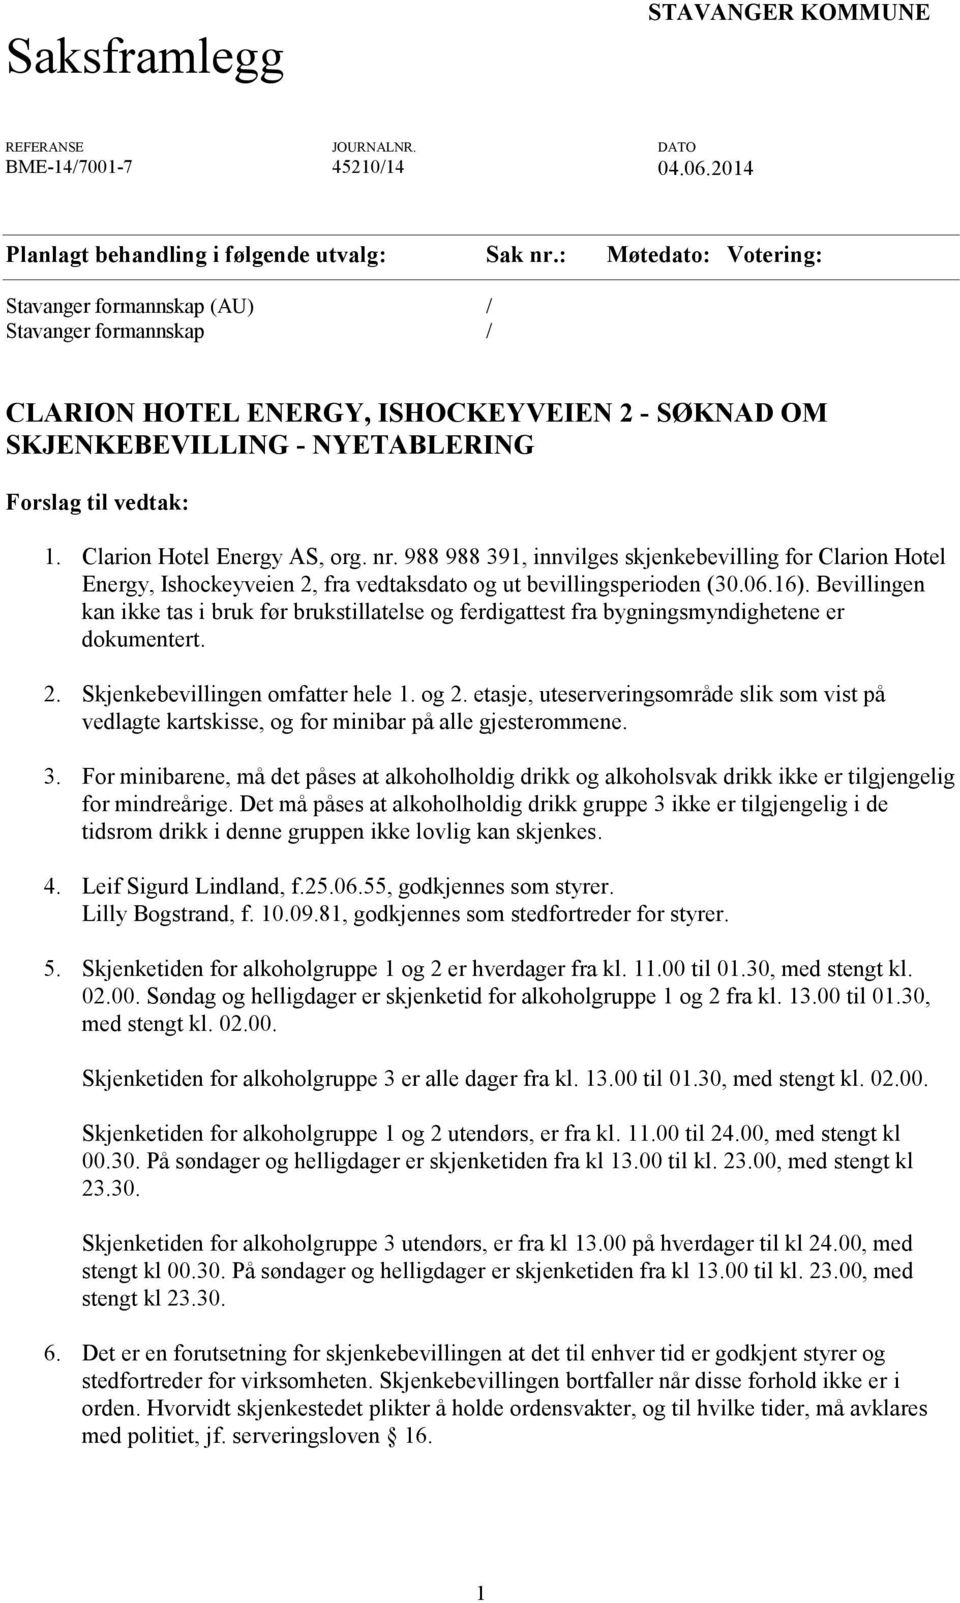 Clarion Hotel Energy AS, org. nr. 988 988 391, innvilges skjenkebevilling for Clarion Hotel Energy, Ishockeyveien 2, fra vedtaksdato og ut bevillingsperioden (30.06.16).